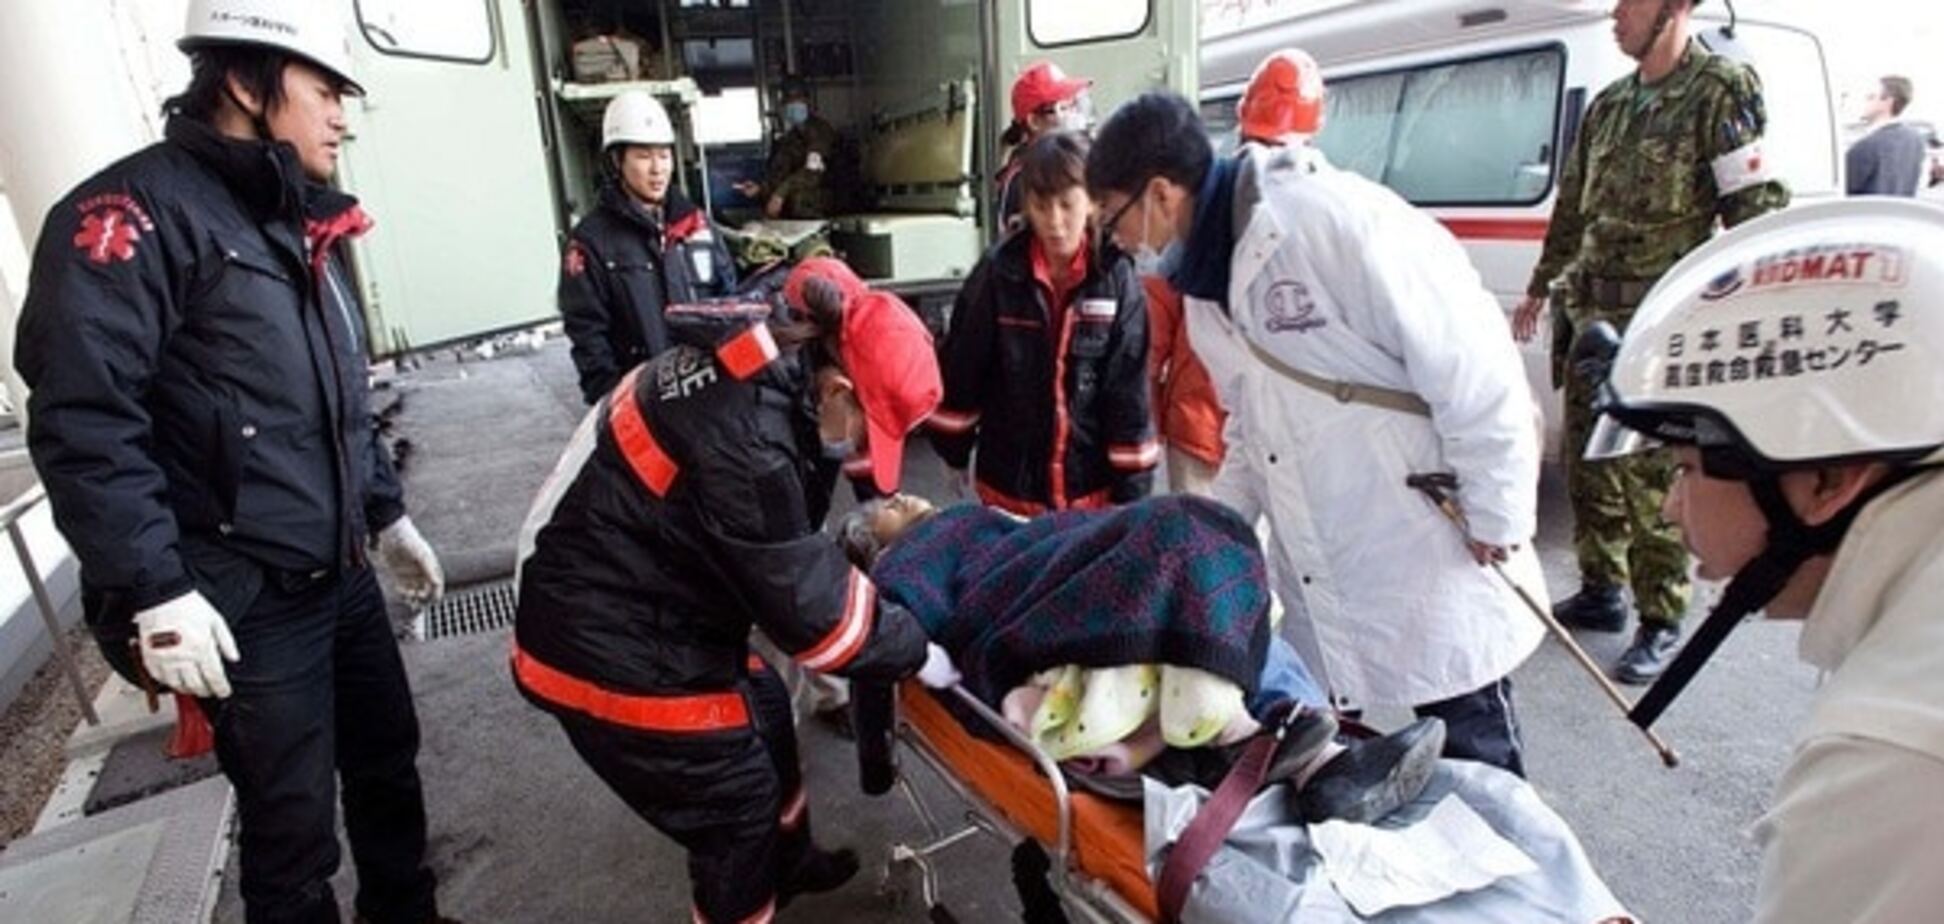 Пожежа в тунелі і більше півсотні постраждалих: в Японії сталася жахлива ДТП